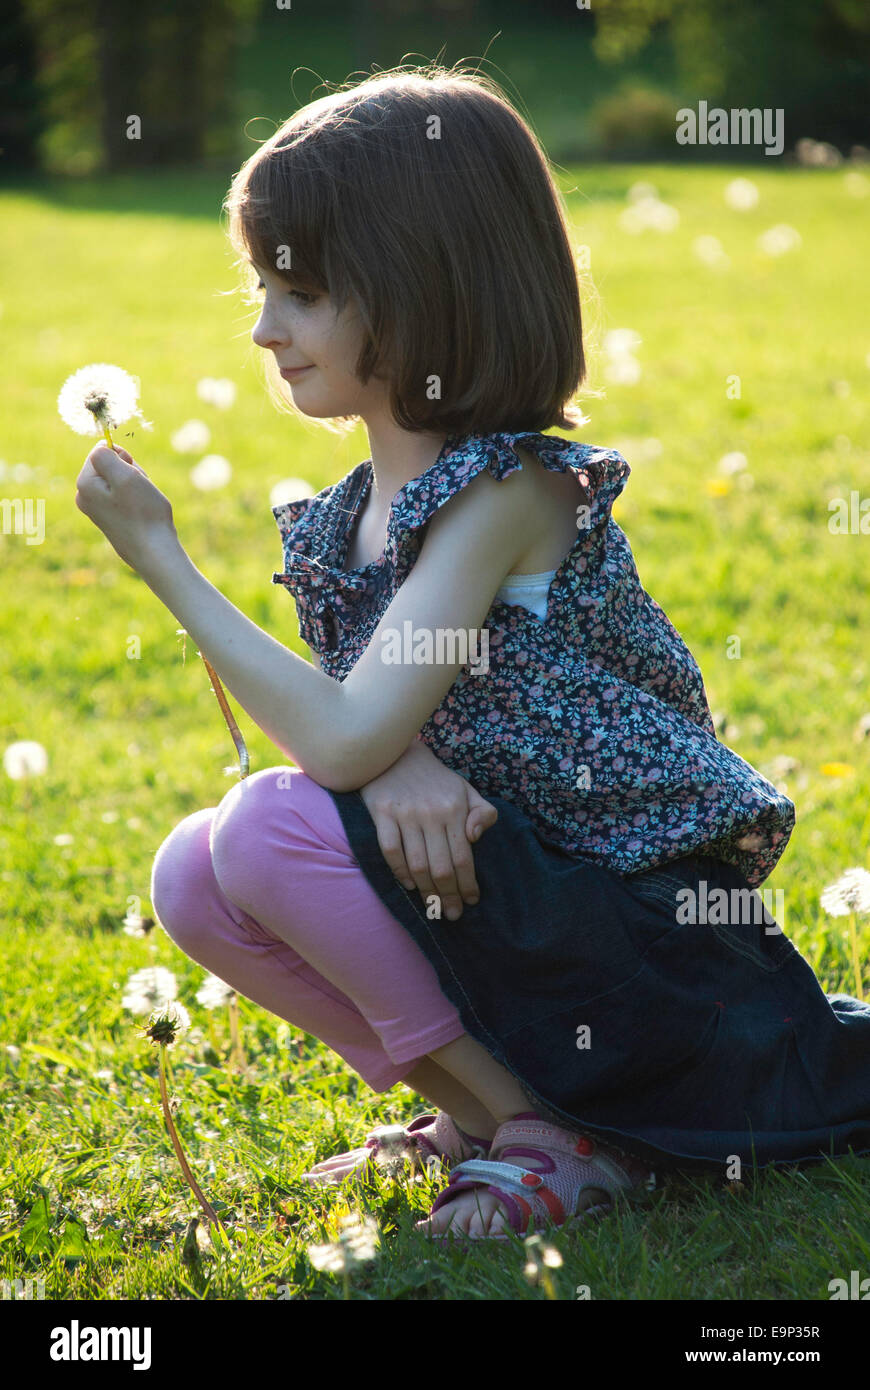 Una giovane ragazza in un soleggiato giardino guardando un dente di leone Foto Stock